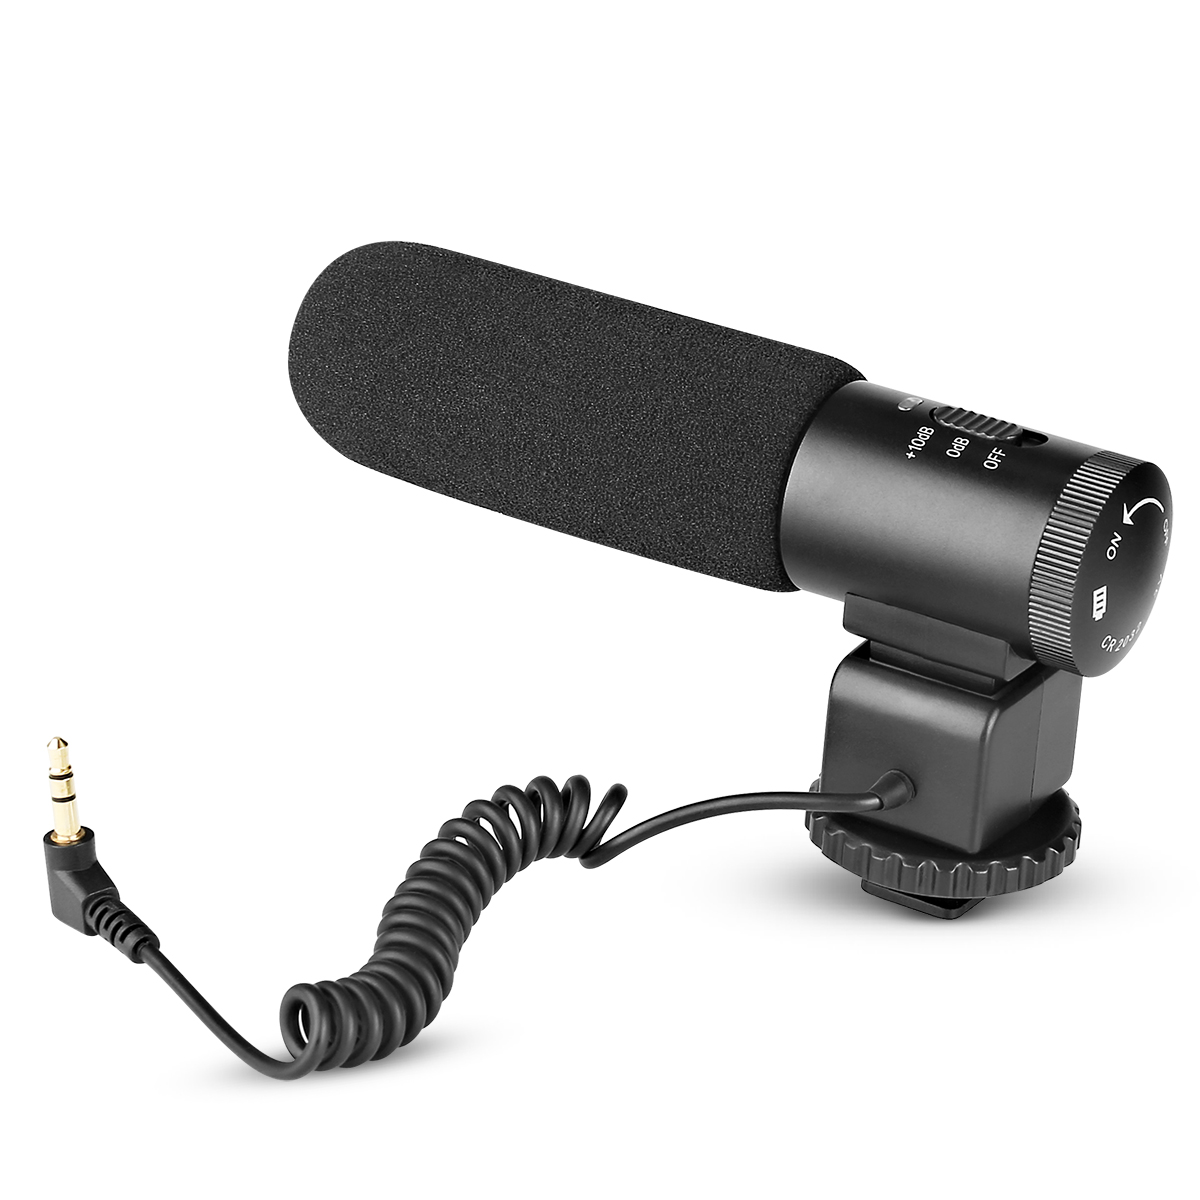 MK-MP1 Microphone